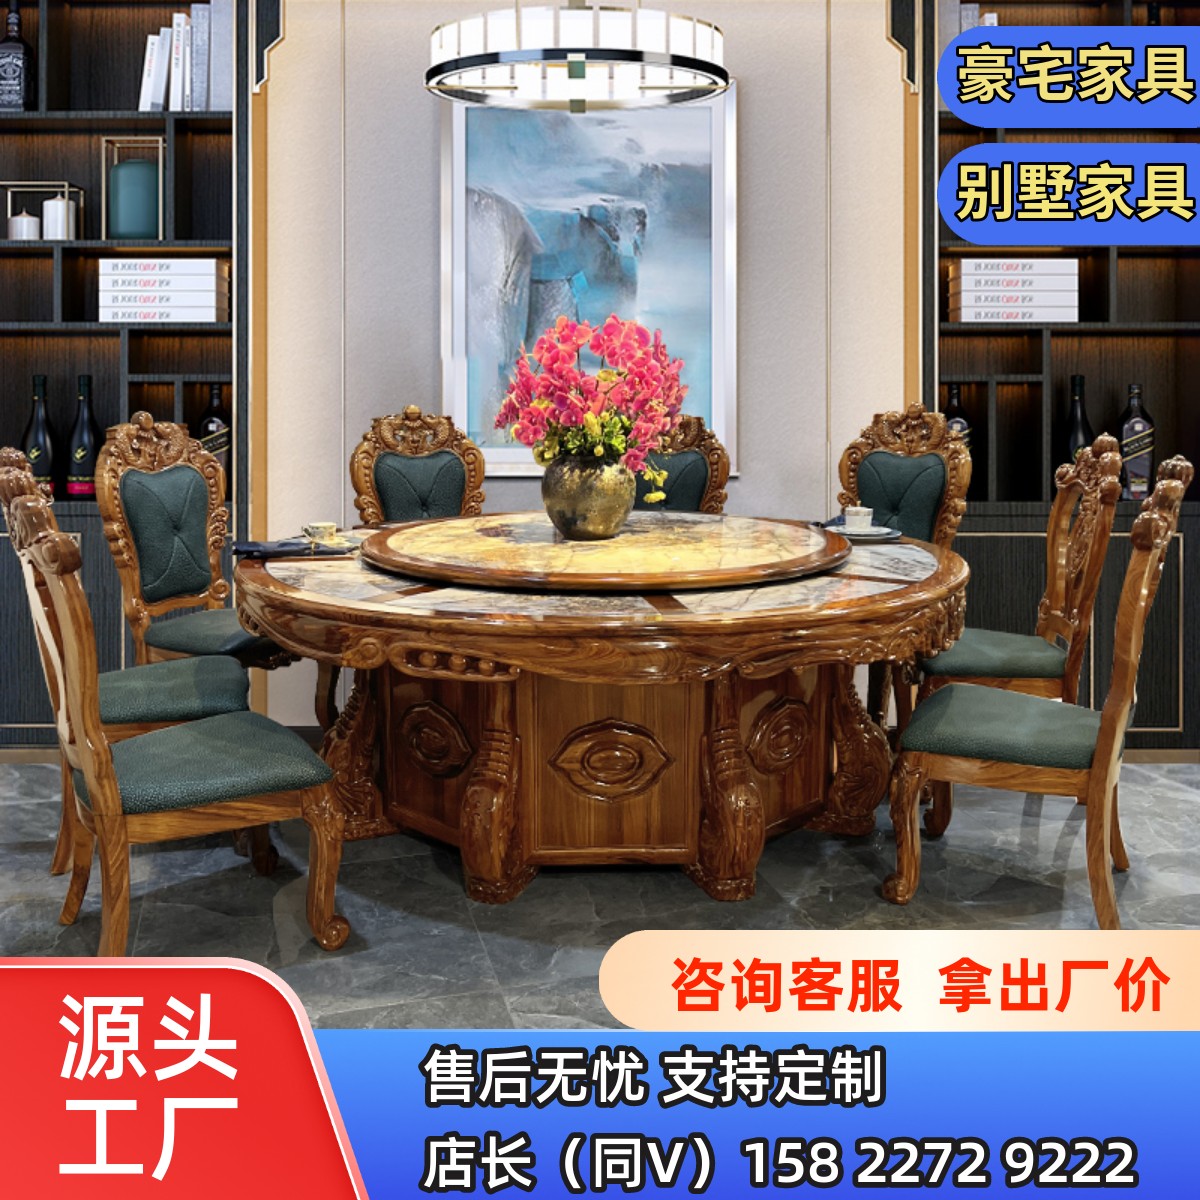 乌金木餐桌圆形欧式餐桌椅组合大理石实木美式家用电动桌别墅家具